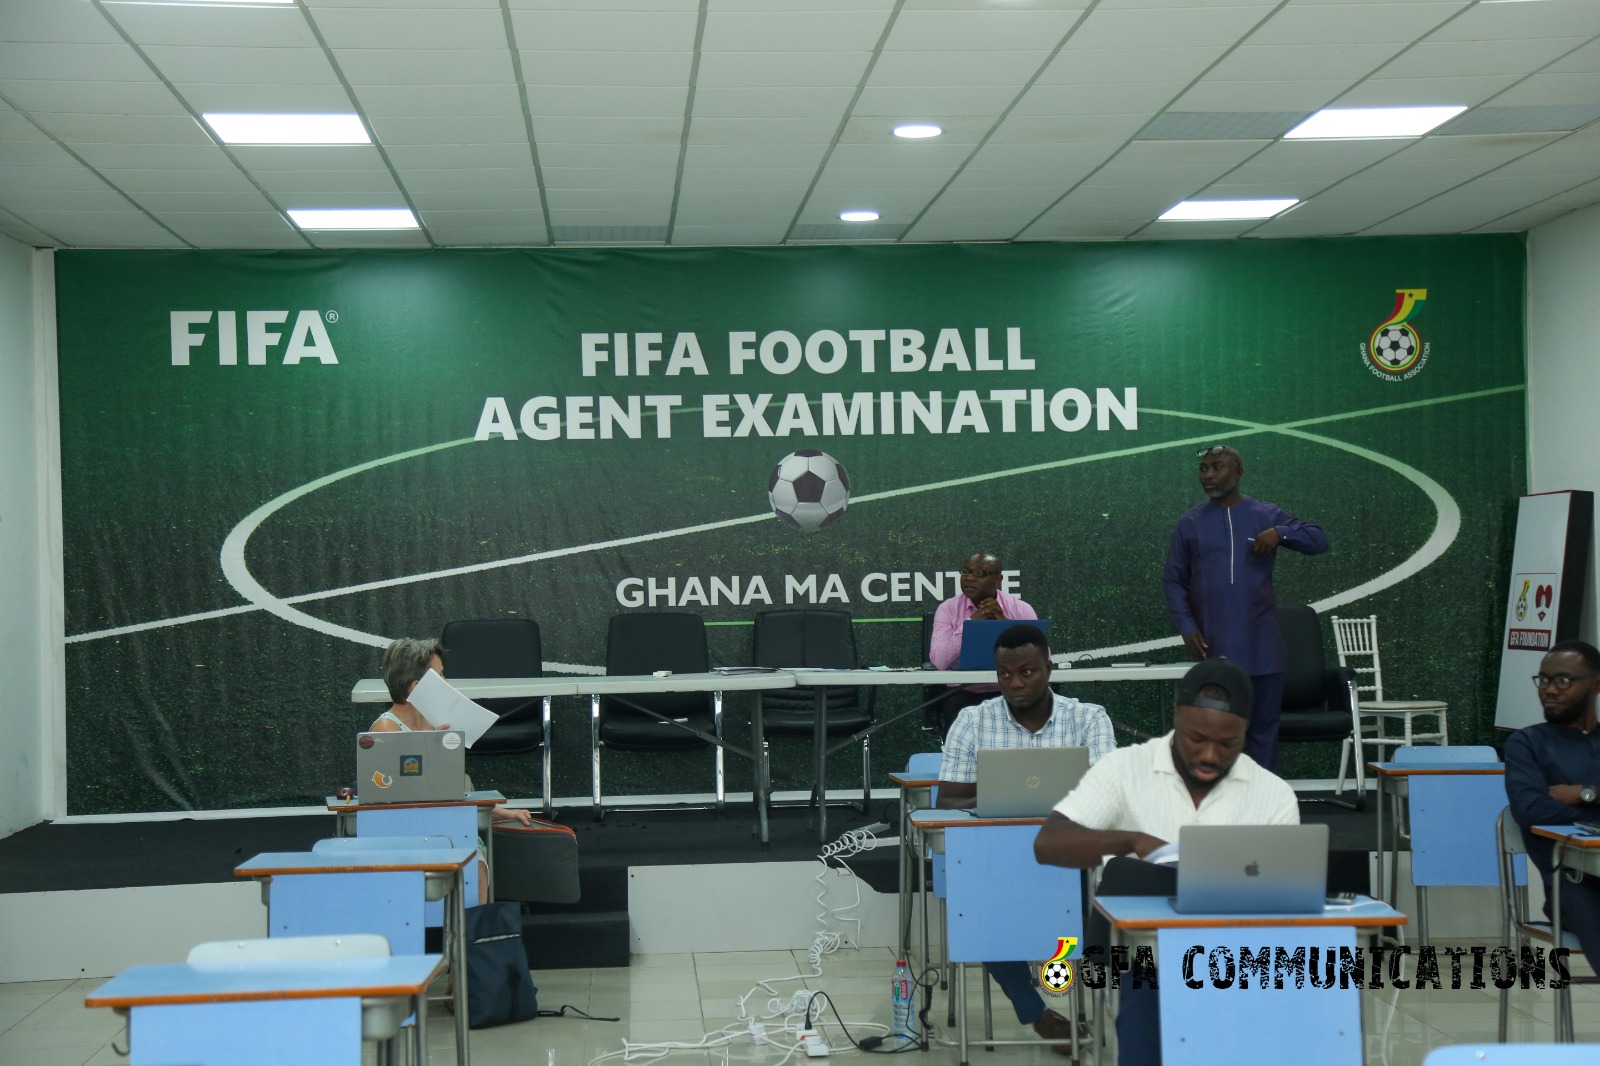 FIFA Football Agent Examination takes place at GFA headquarters